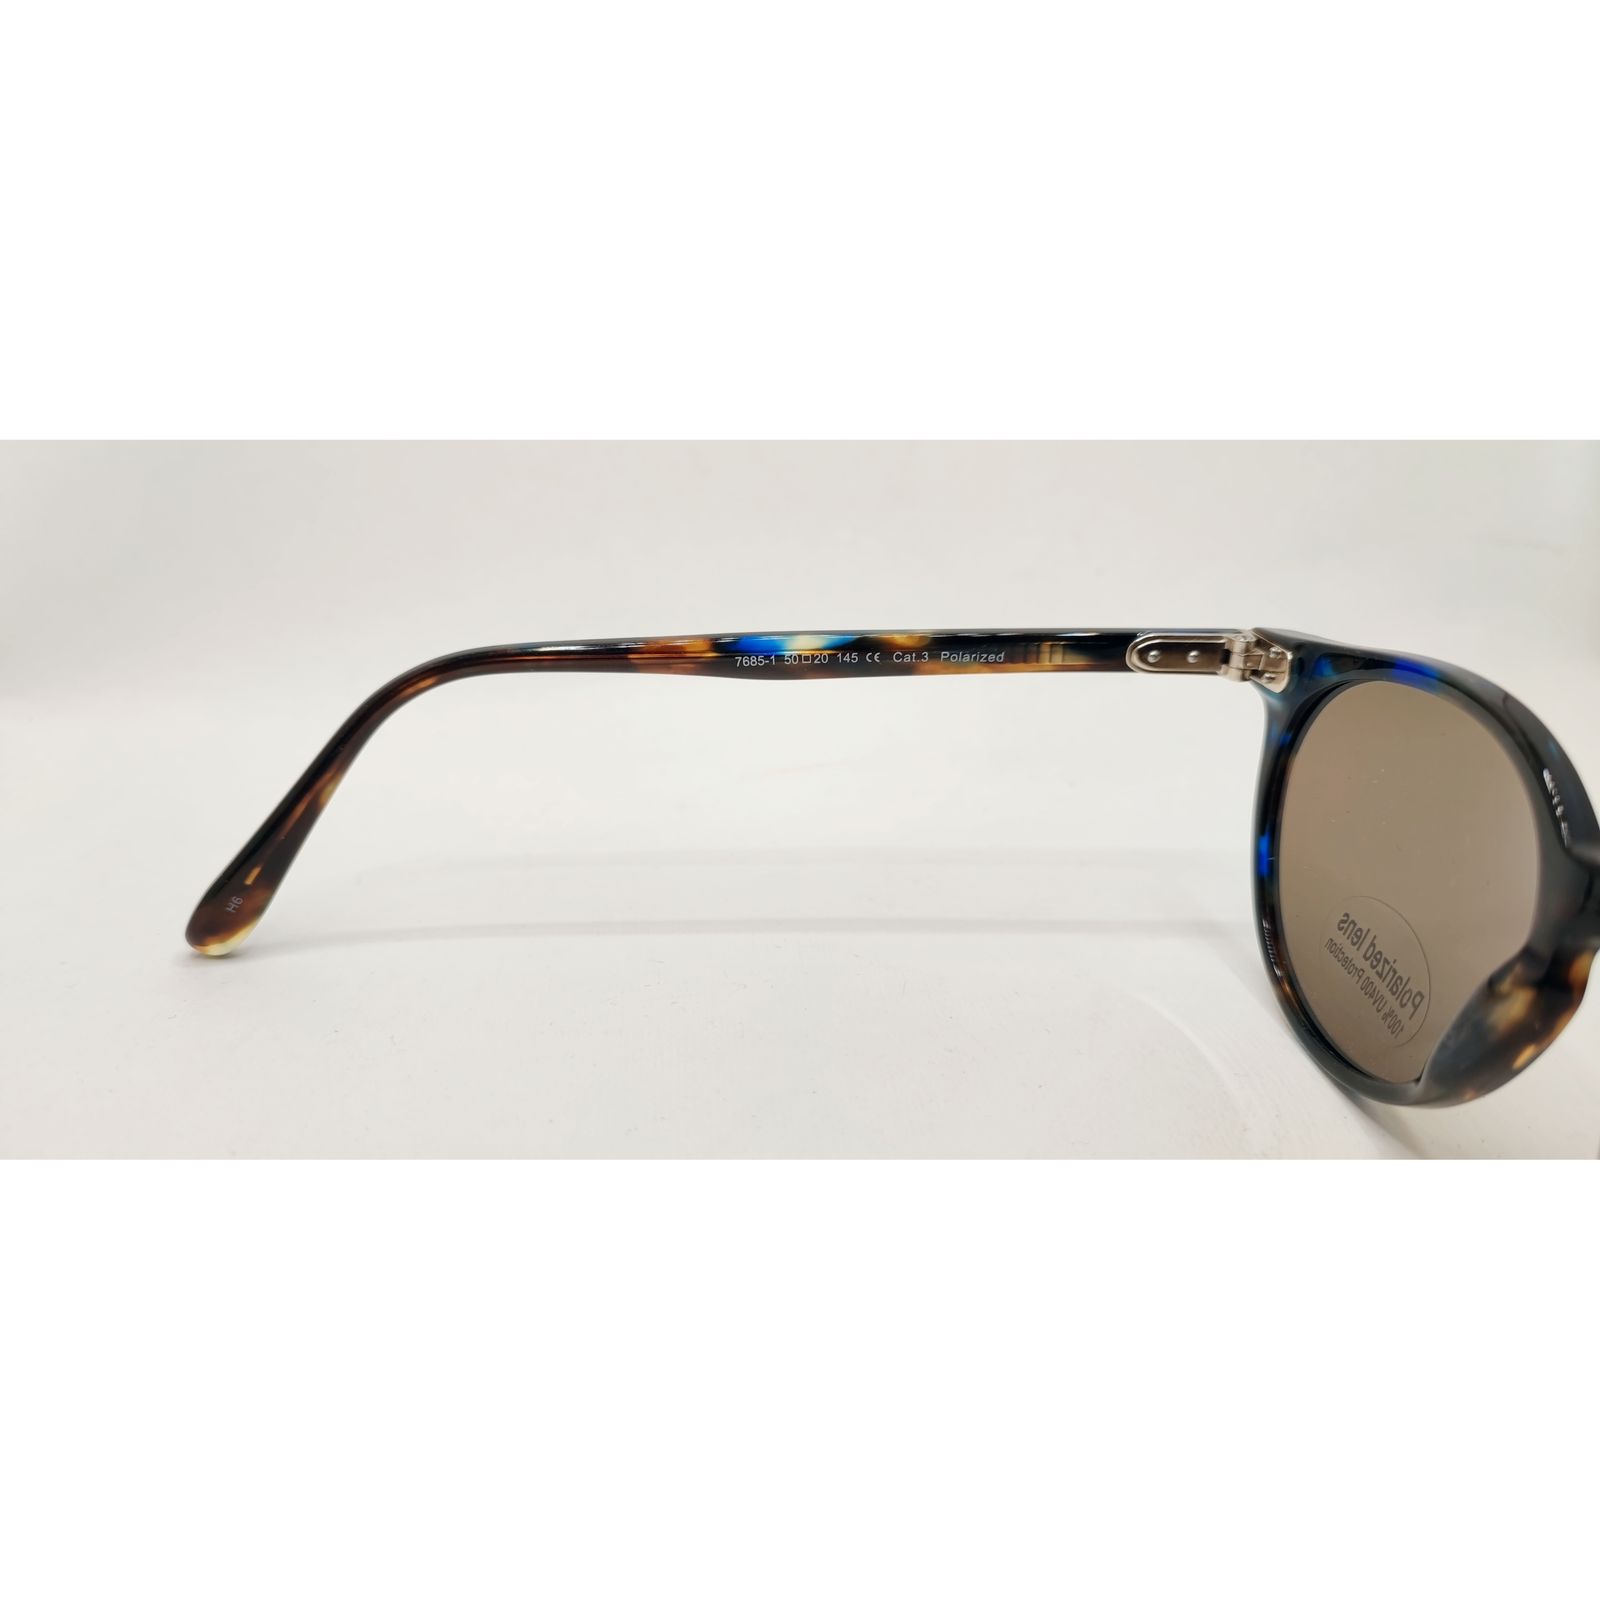 عینک آفتابی ویستان مدل 7685-1 -  - 5